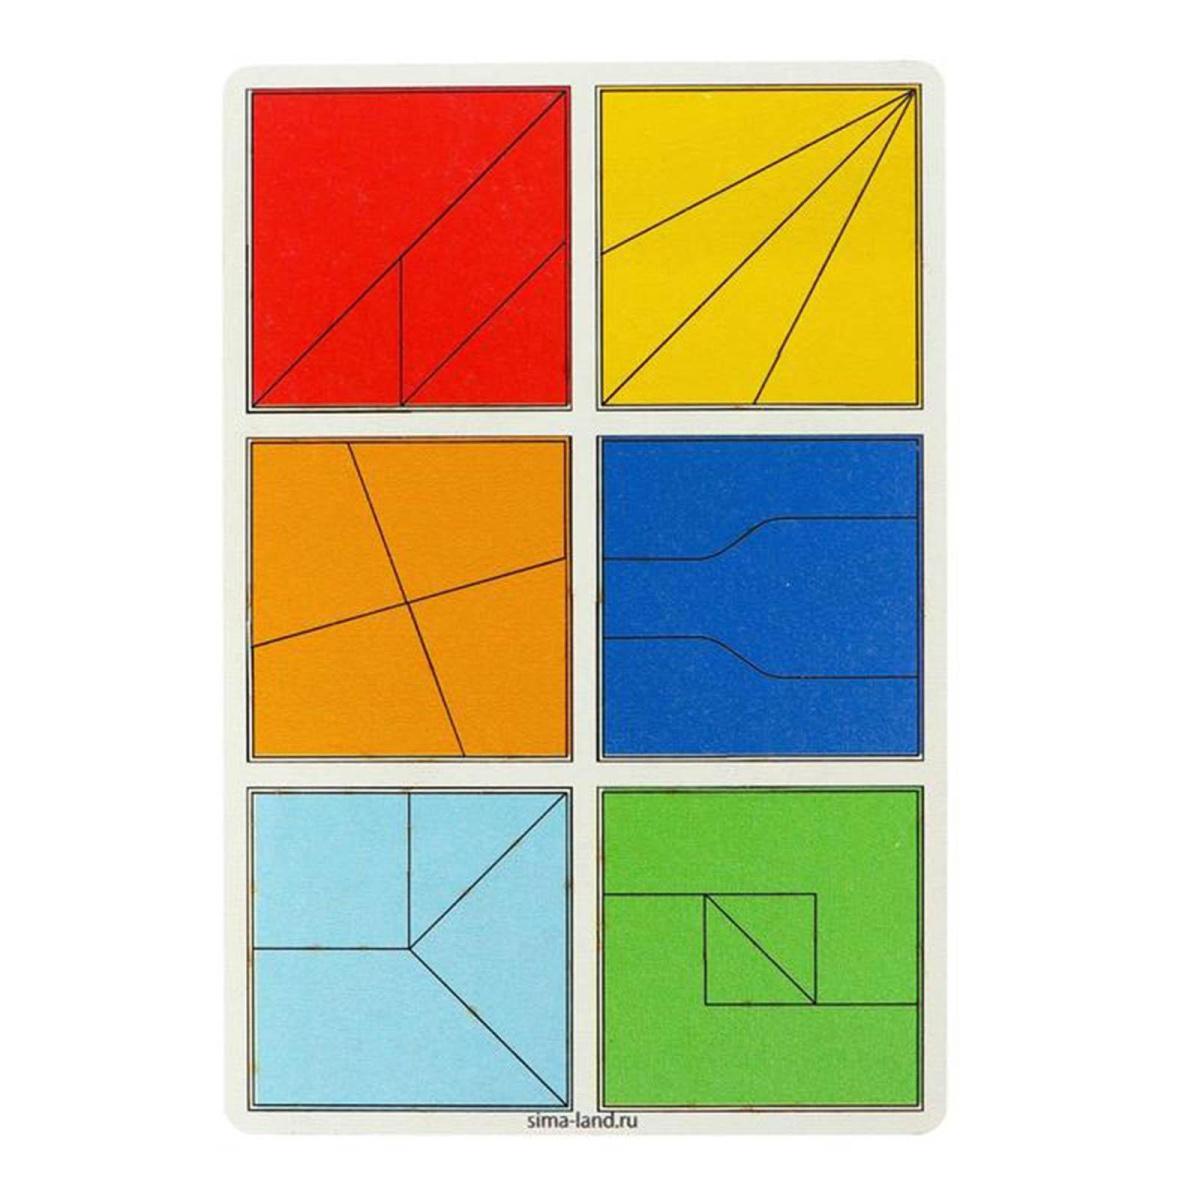 Квадраты 2 уровень, 6 квадратов